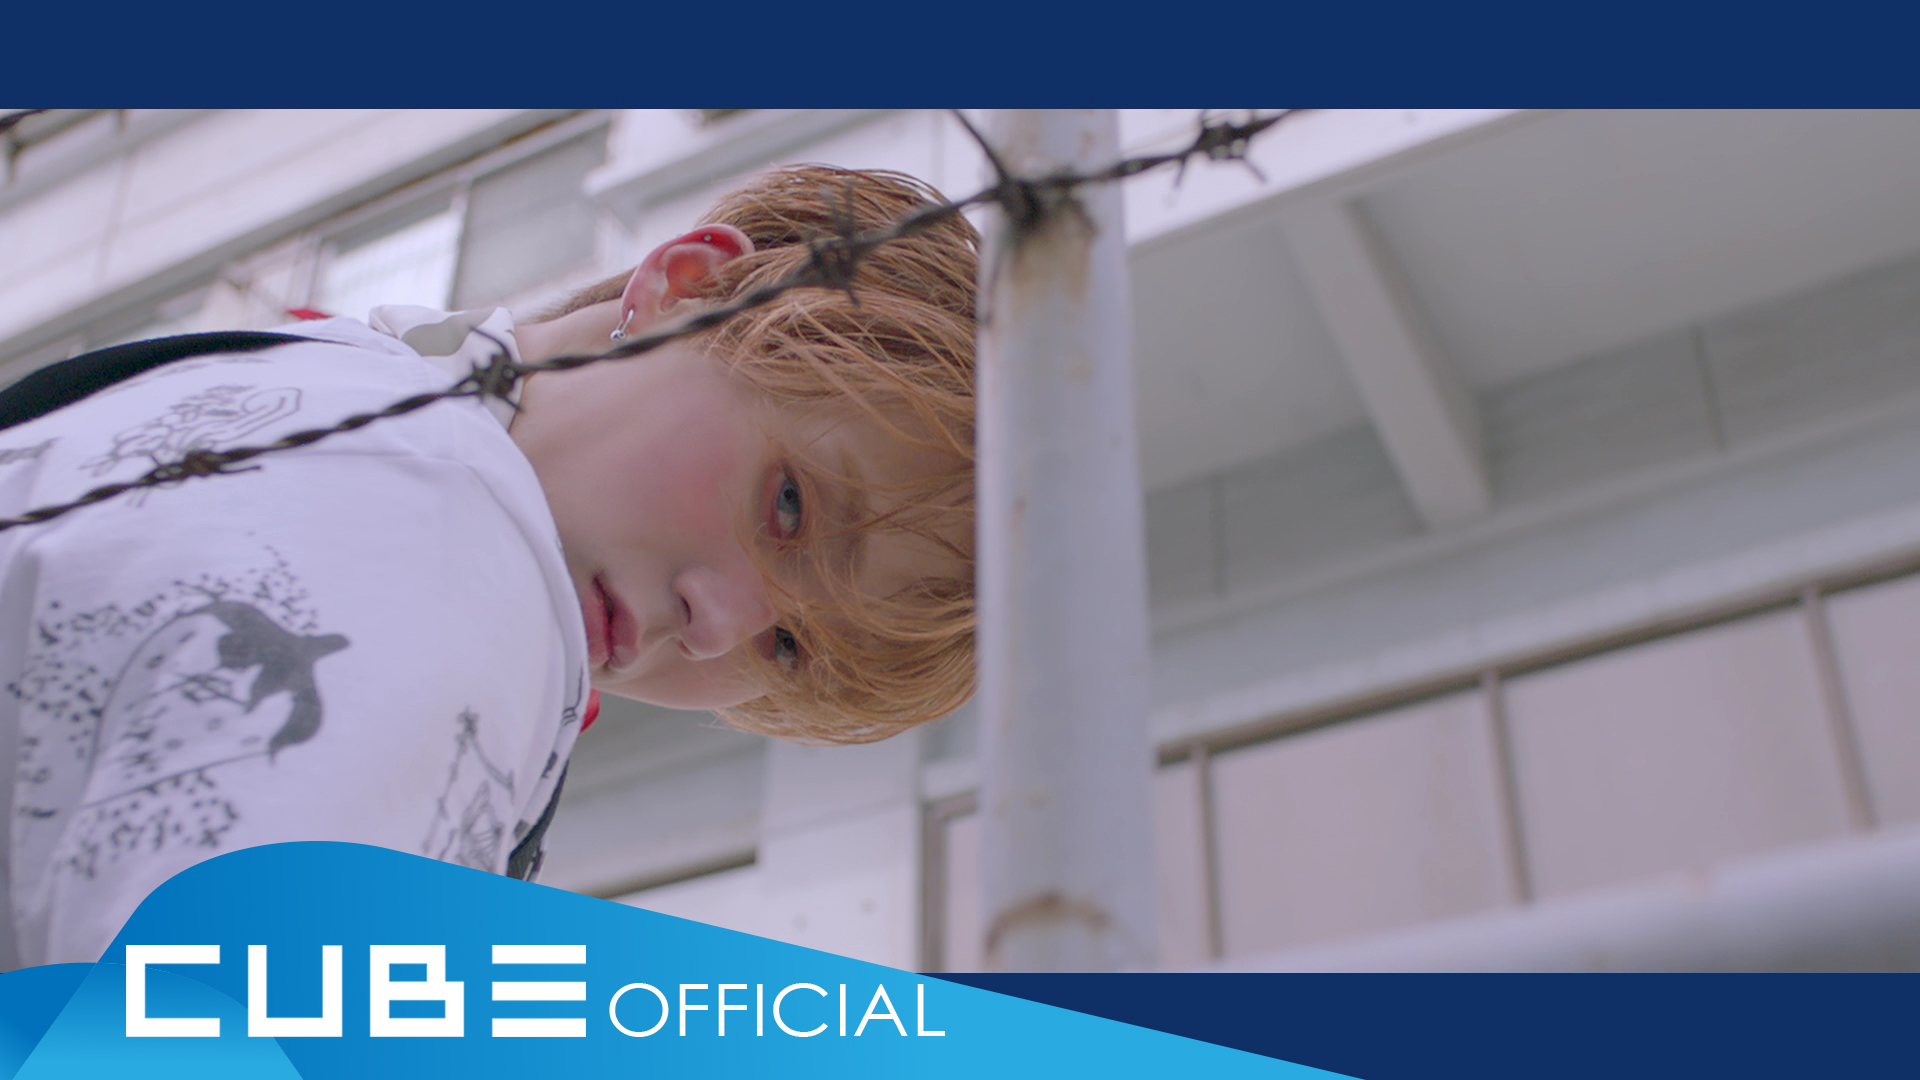 펜타곤 - '빛나리(Shine)' Official Music Video